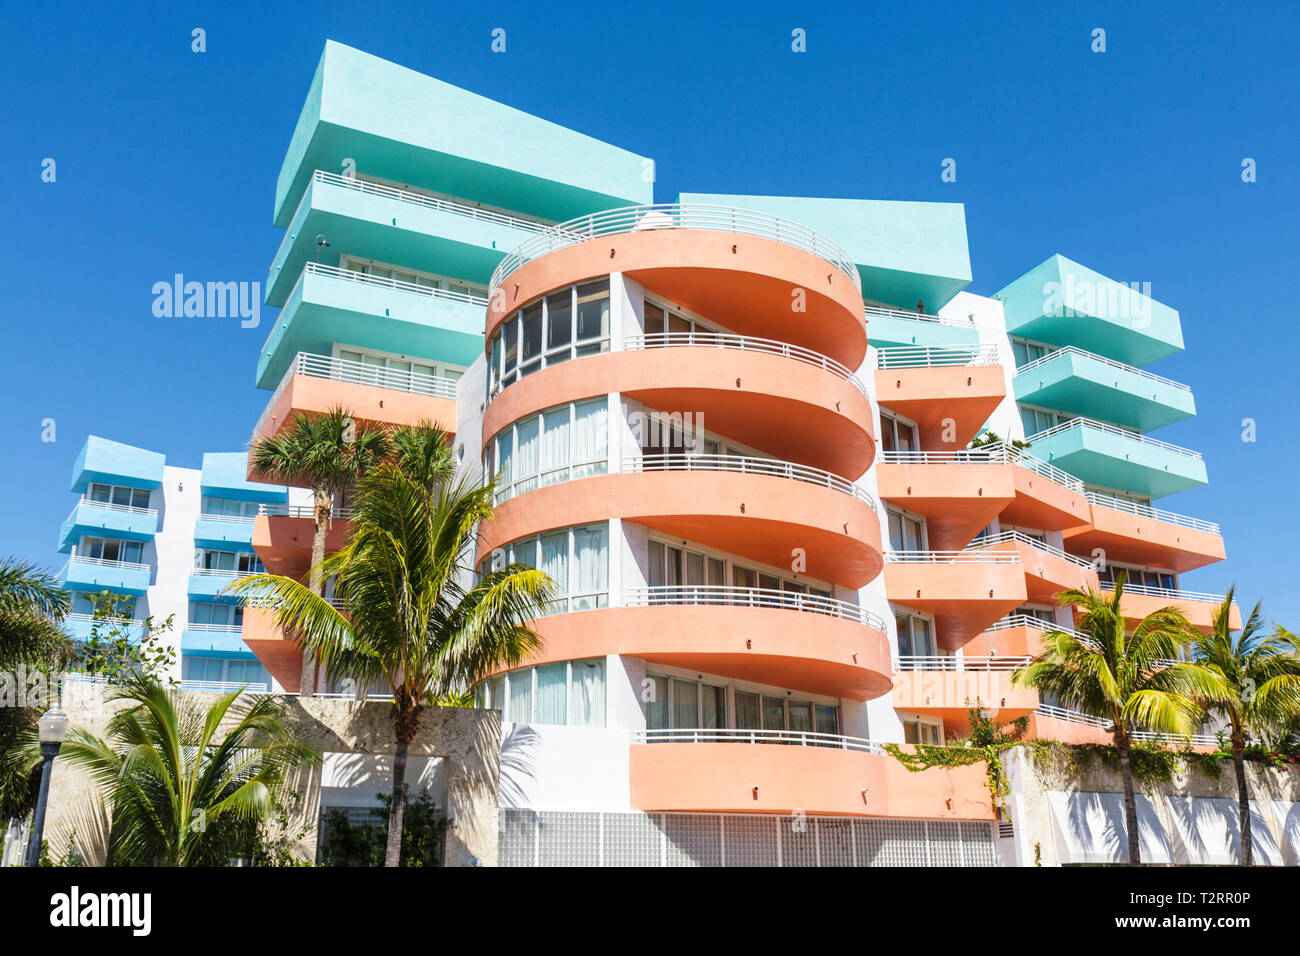 Miami Beach Florida, Ocean Drive, Ocean Place, Pfirsich, grün, blau, Balkone, Eigentumswohnungen Wohnapartments Gebäude Gebäude Gehäuse, hohe ri Stockfoto